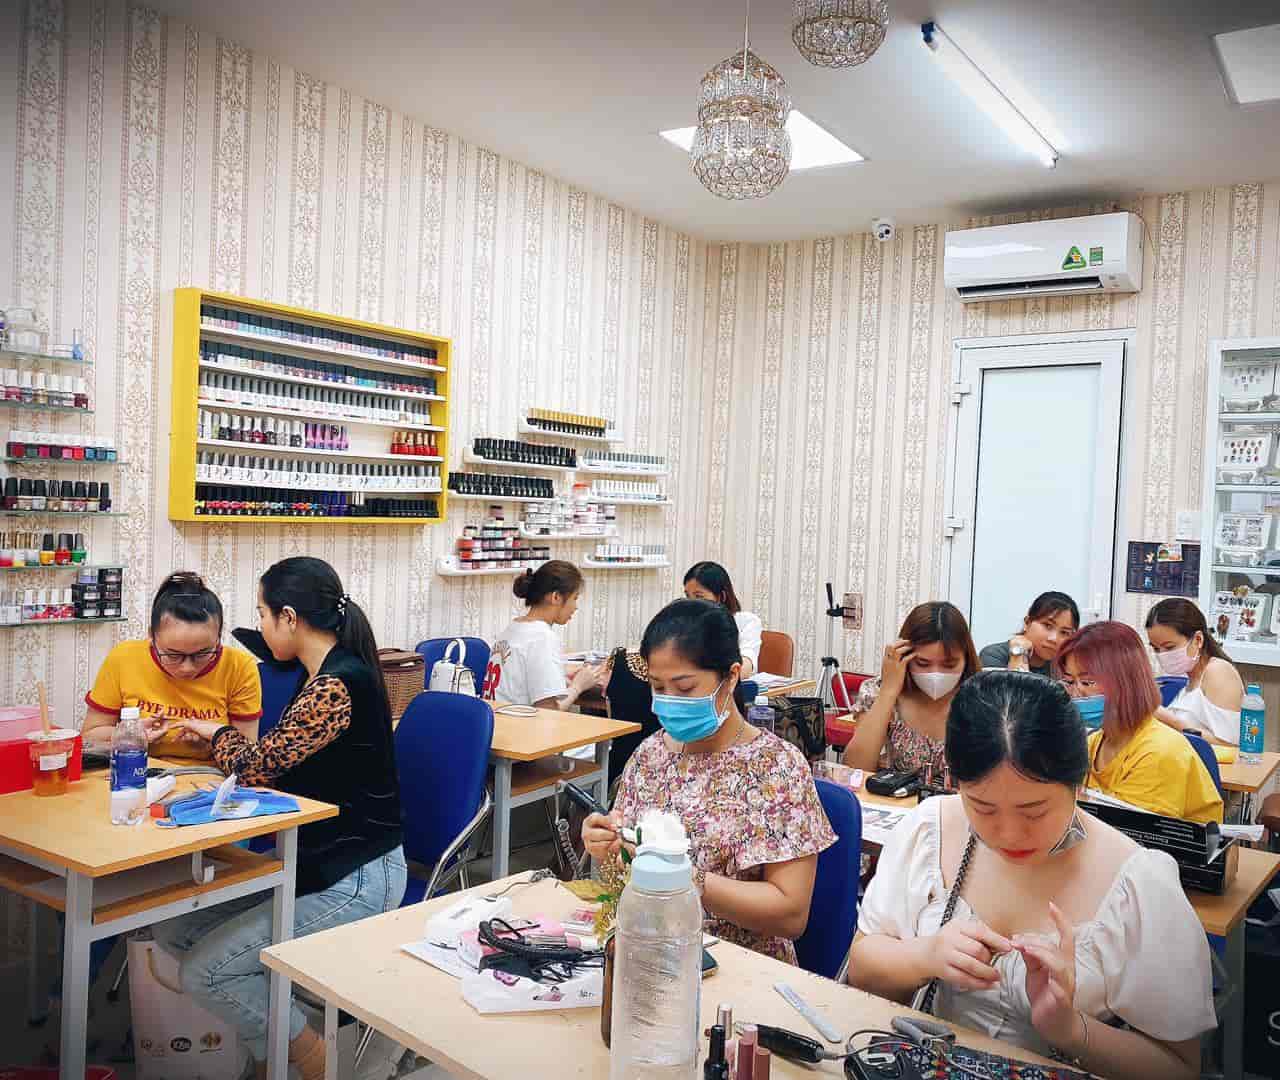 Trung tâm đào tạo khóa dạy học nghề làm nail ở đâu giá rẻ uy tín tphcm?